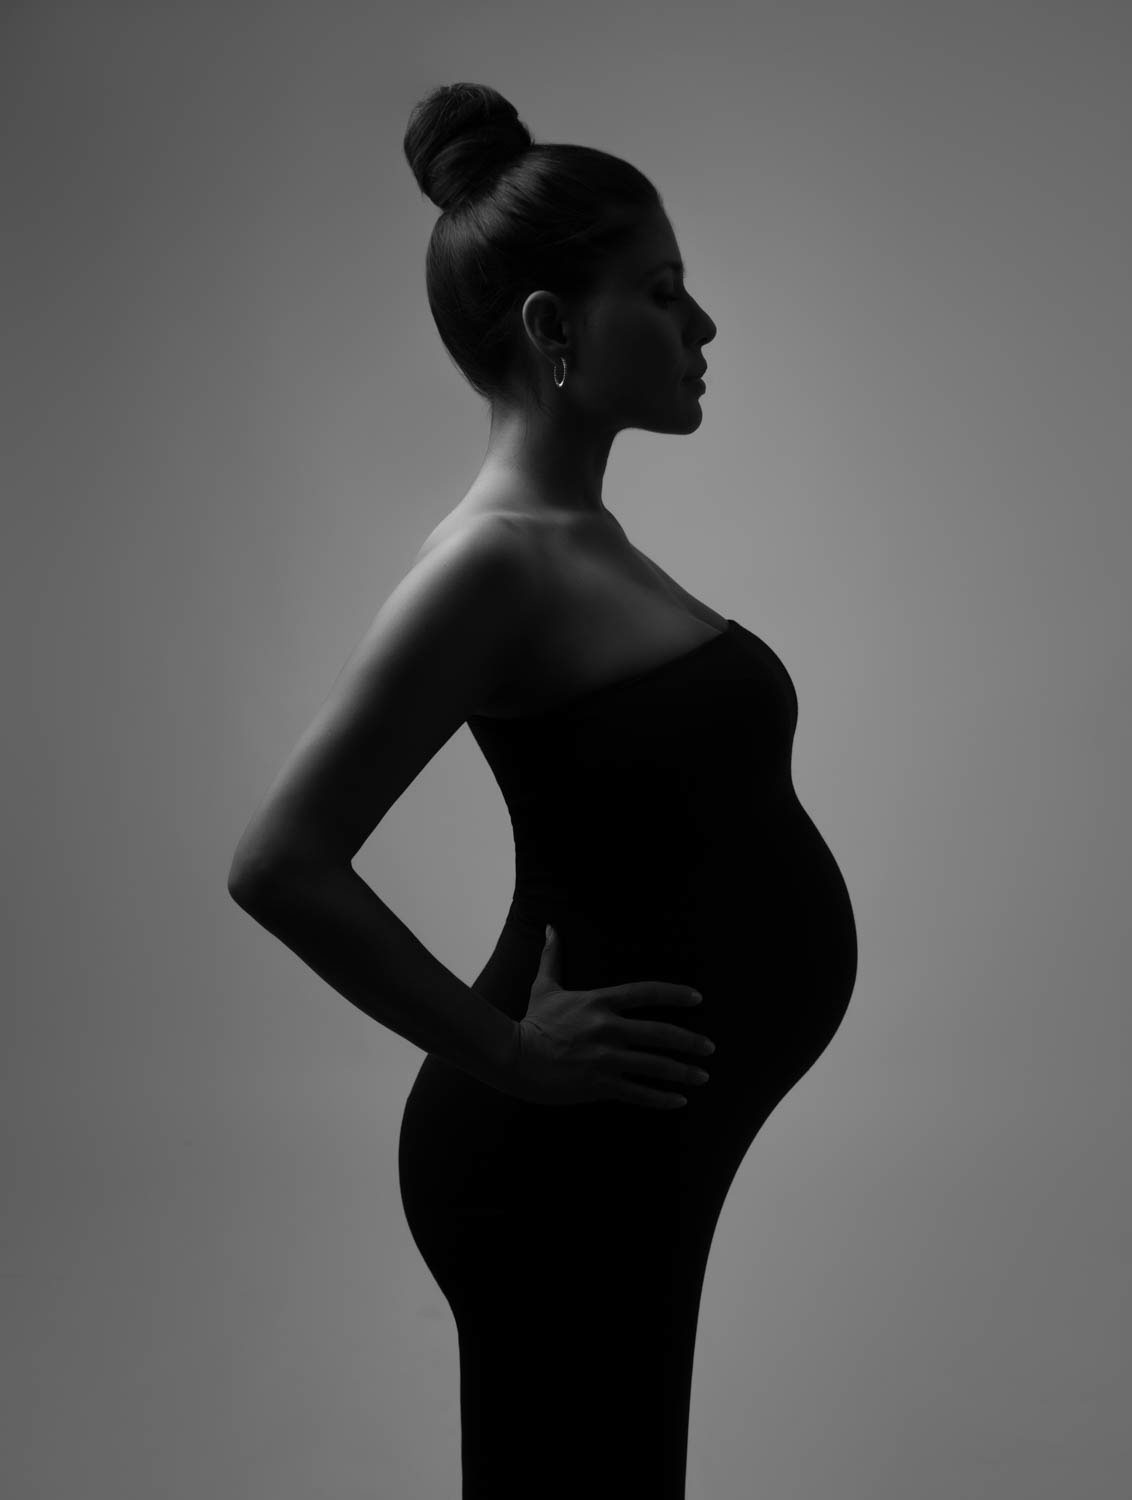 lola melani photography baby photography maternity photography newborn photgoraphy family photography nyc photographer